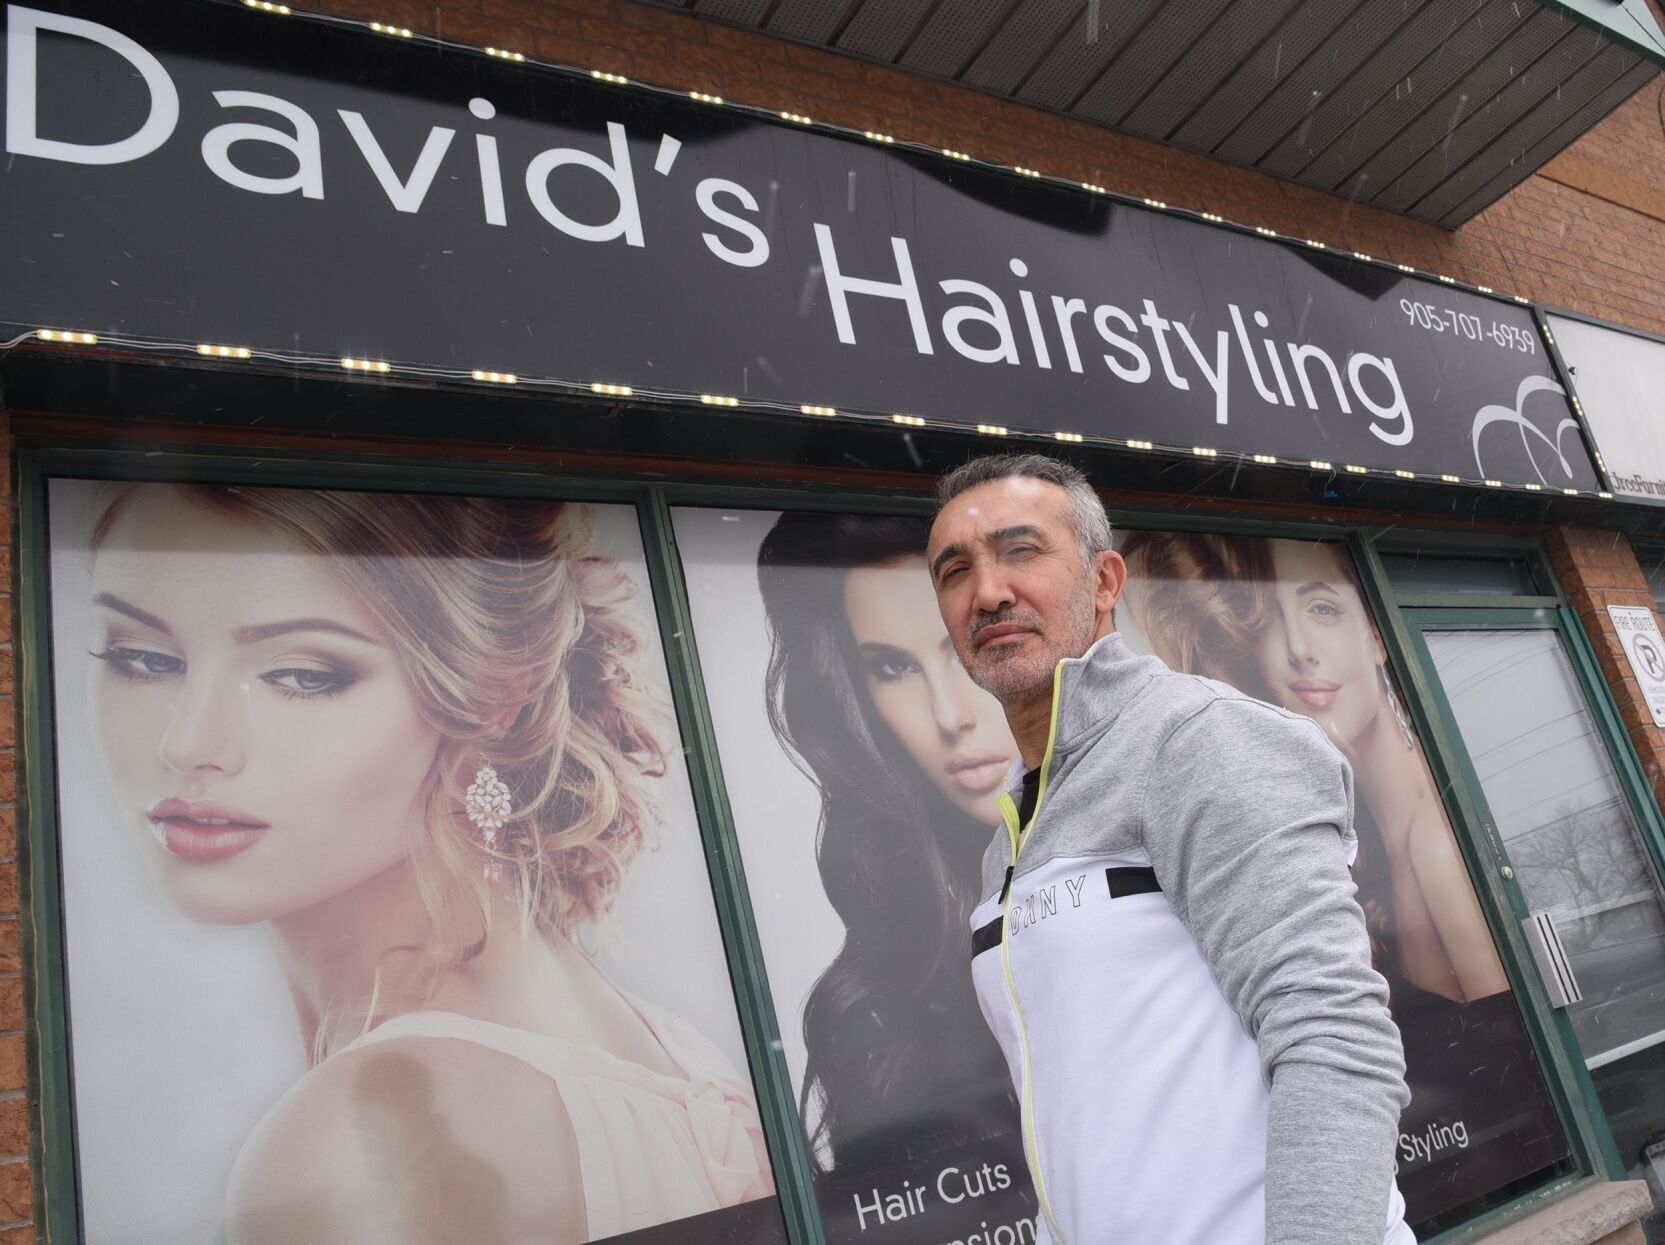 David's Hairstyling Парикмахерские Услуги - BAZAR.club